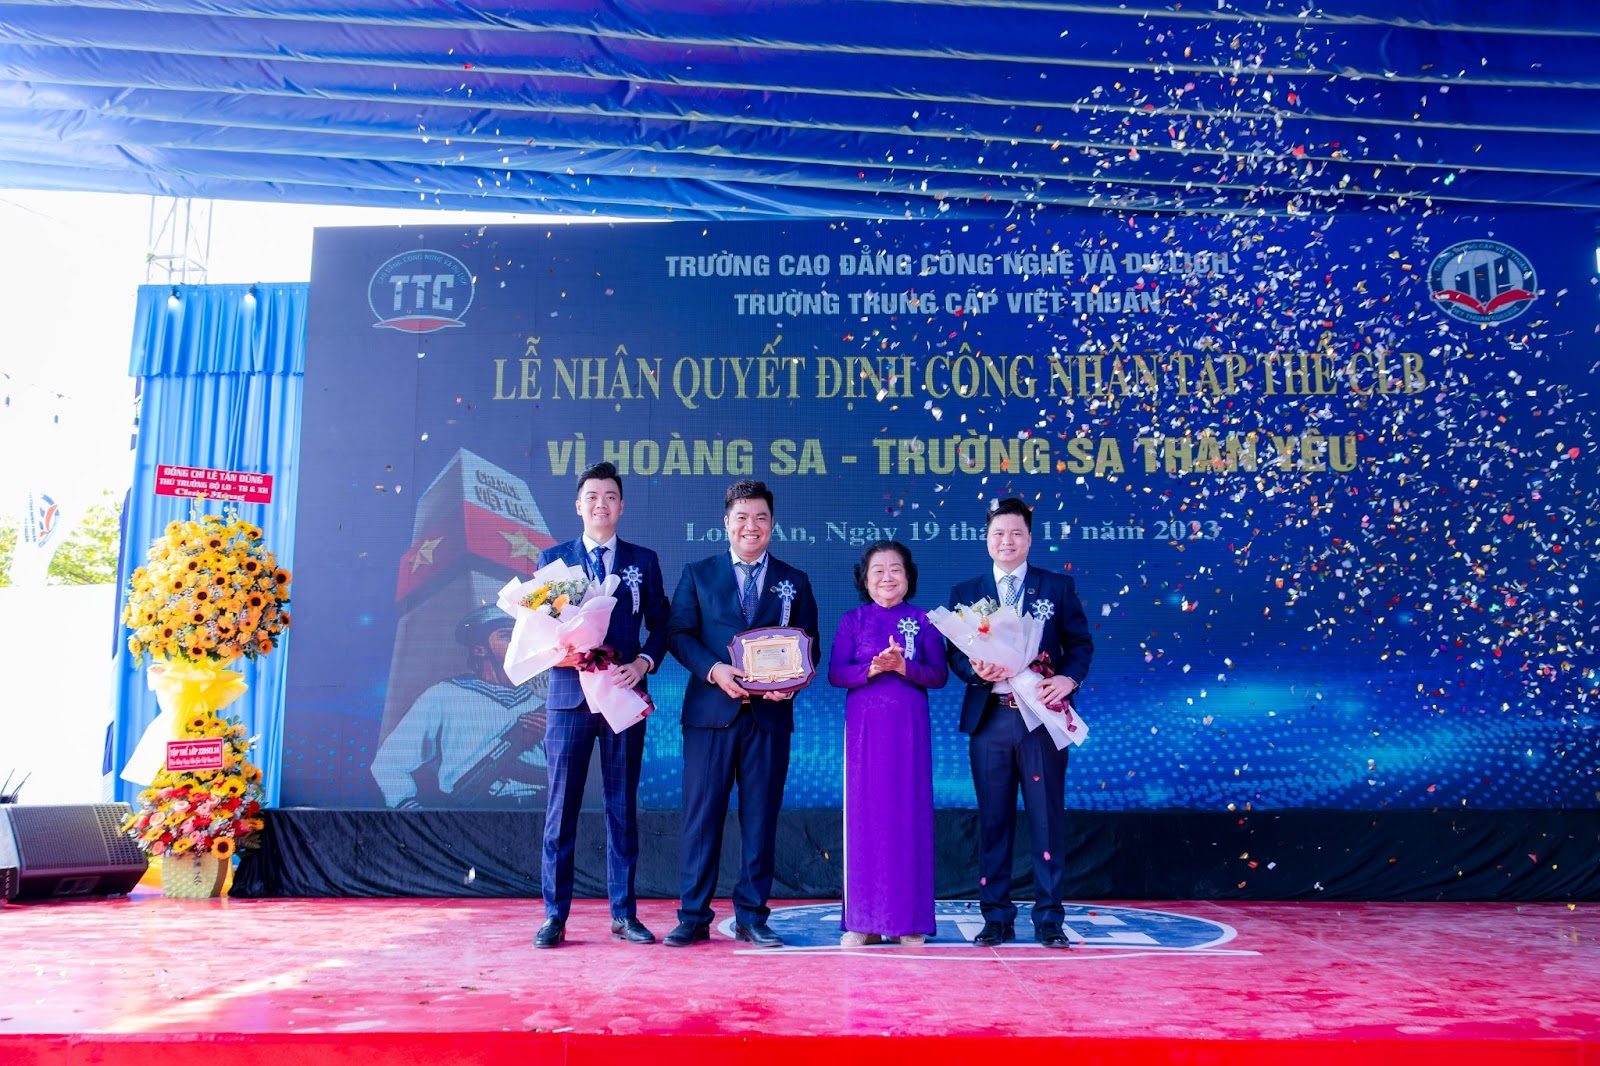 Trường Cao đẳng Công nghệ Và Du lịch và Trường Trung Cấp Việt Thuận khai giảng năm học mới 2023 – 2024